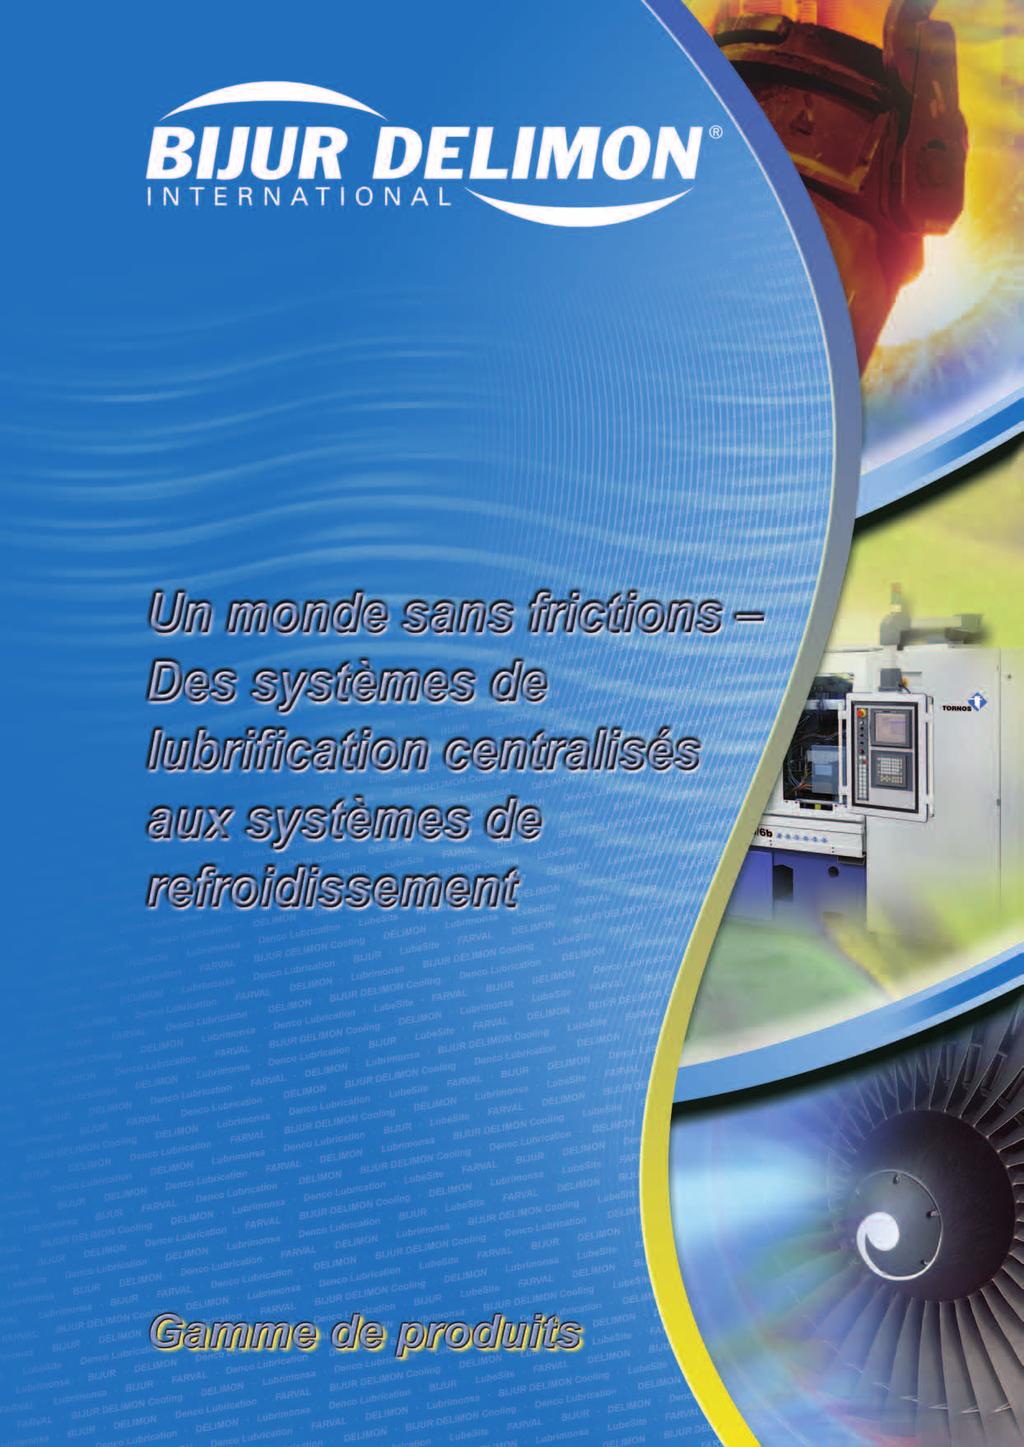 Distributeur Bijur Delimon - Lubrimonsa. Systèmes de lubrification